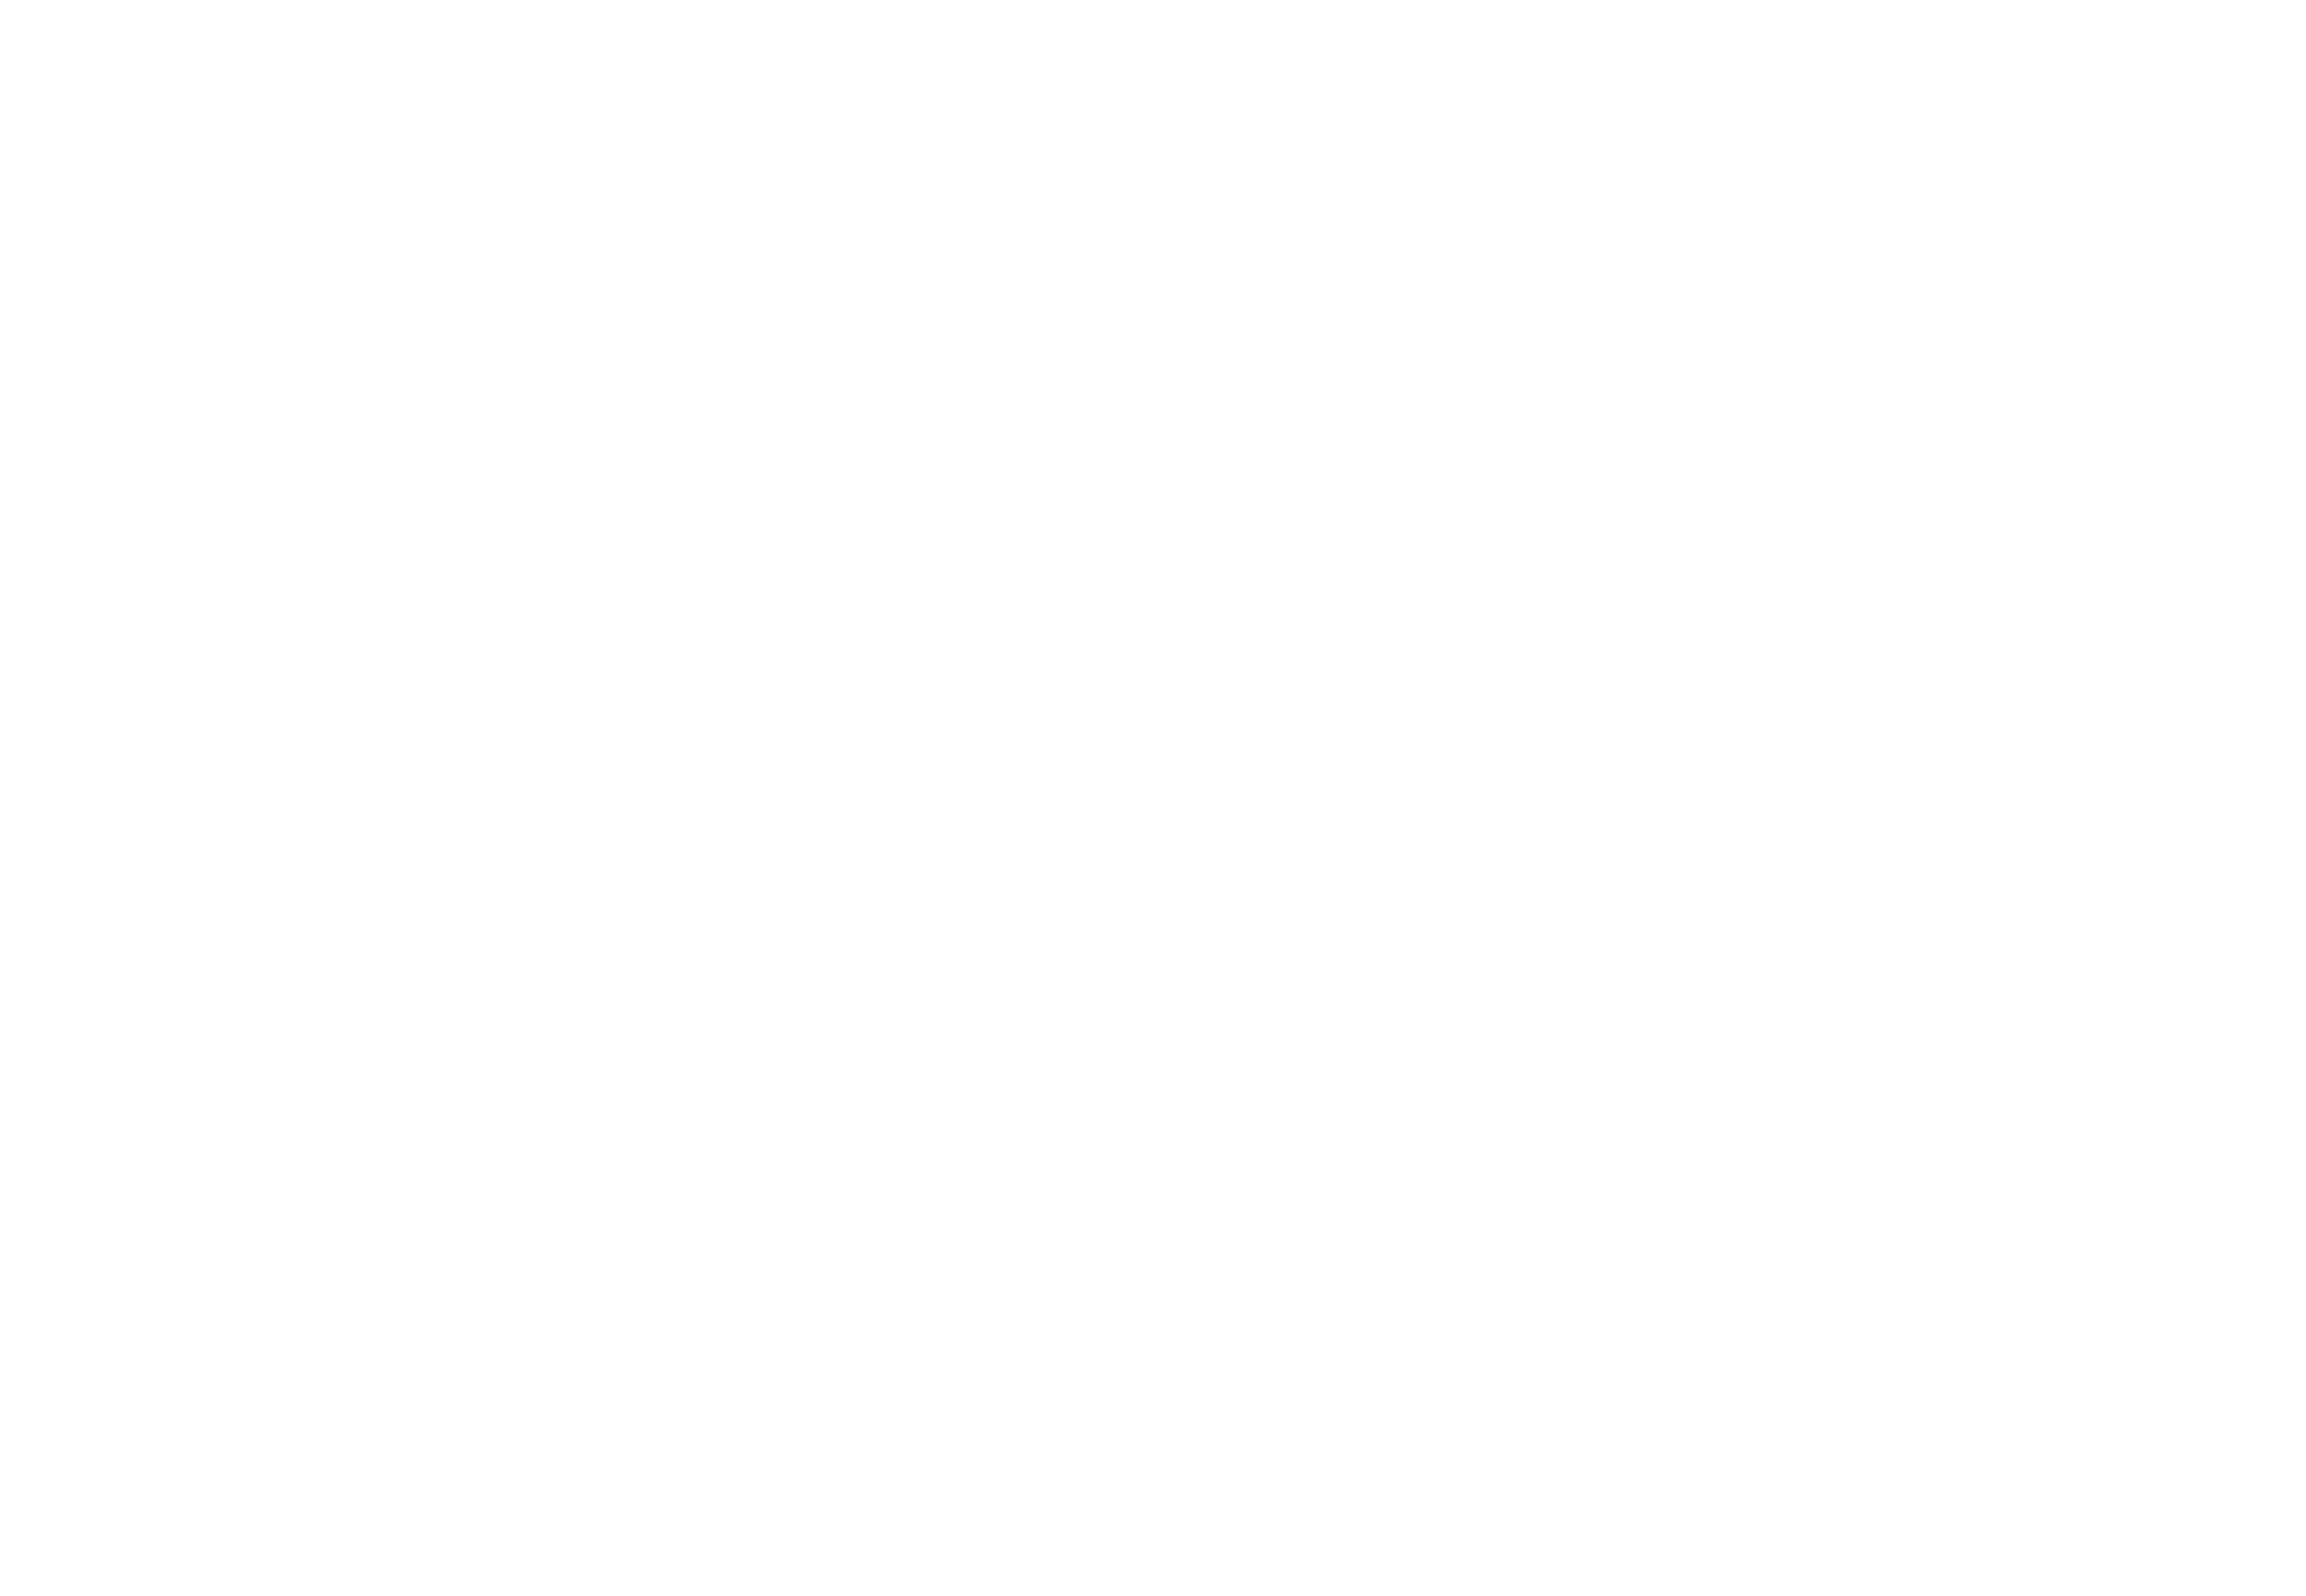 Expo_Valley_ logo white-02